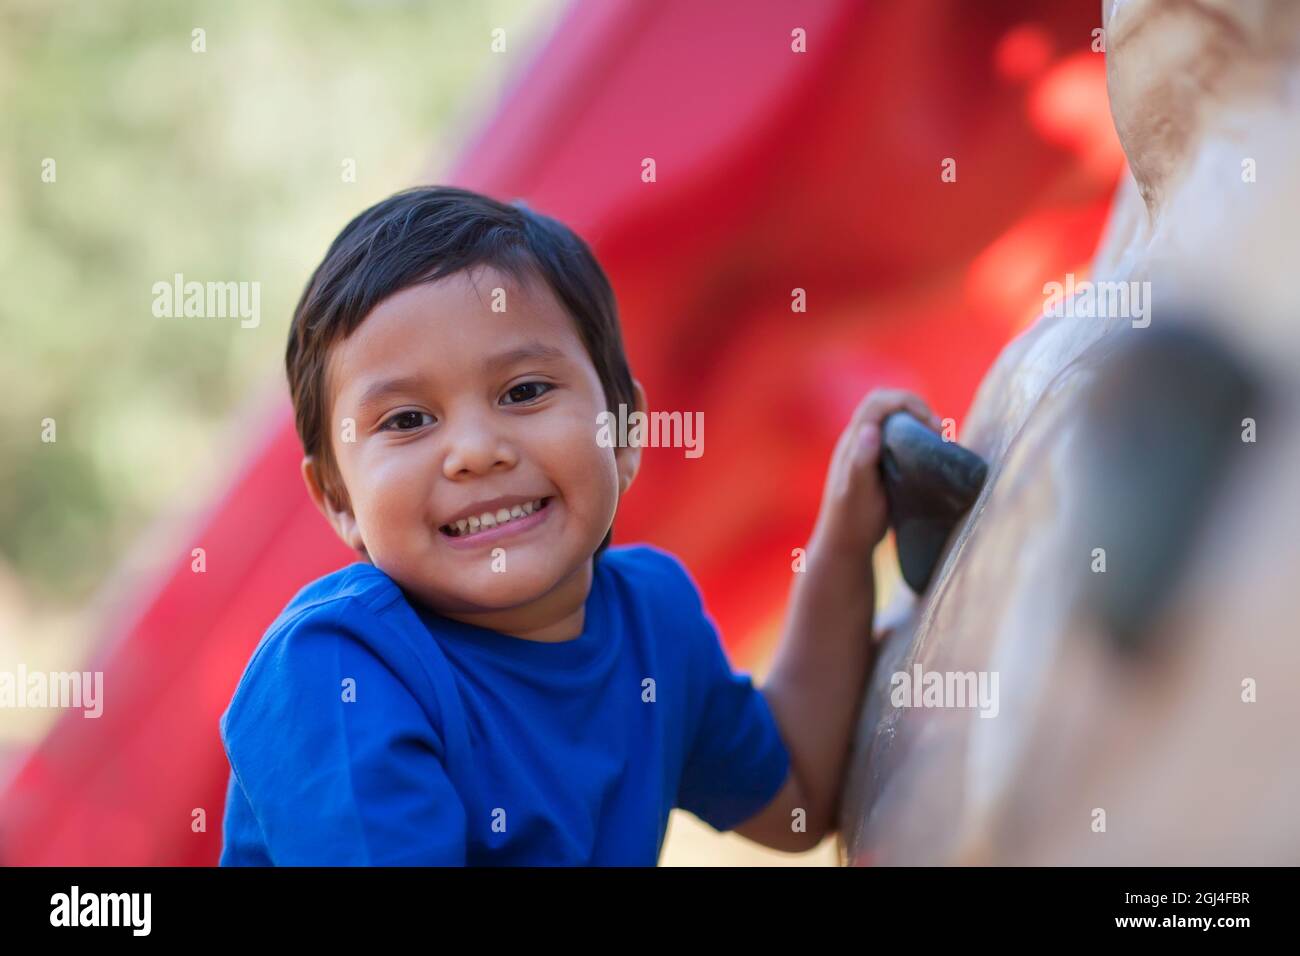 Der 5-jährige Junge lächelt, während er sich an einer Kletterwand für Kinder im Freien festhält. Stockfoto